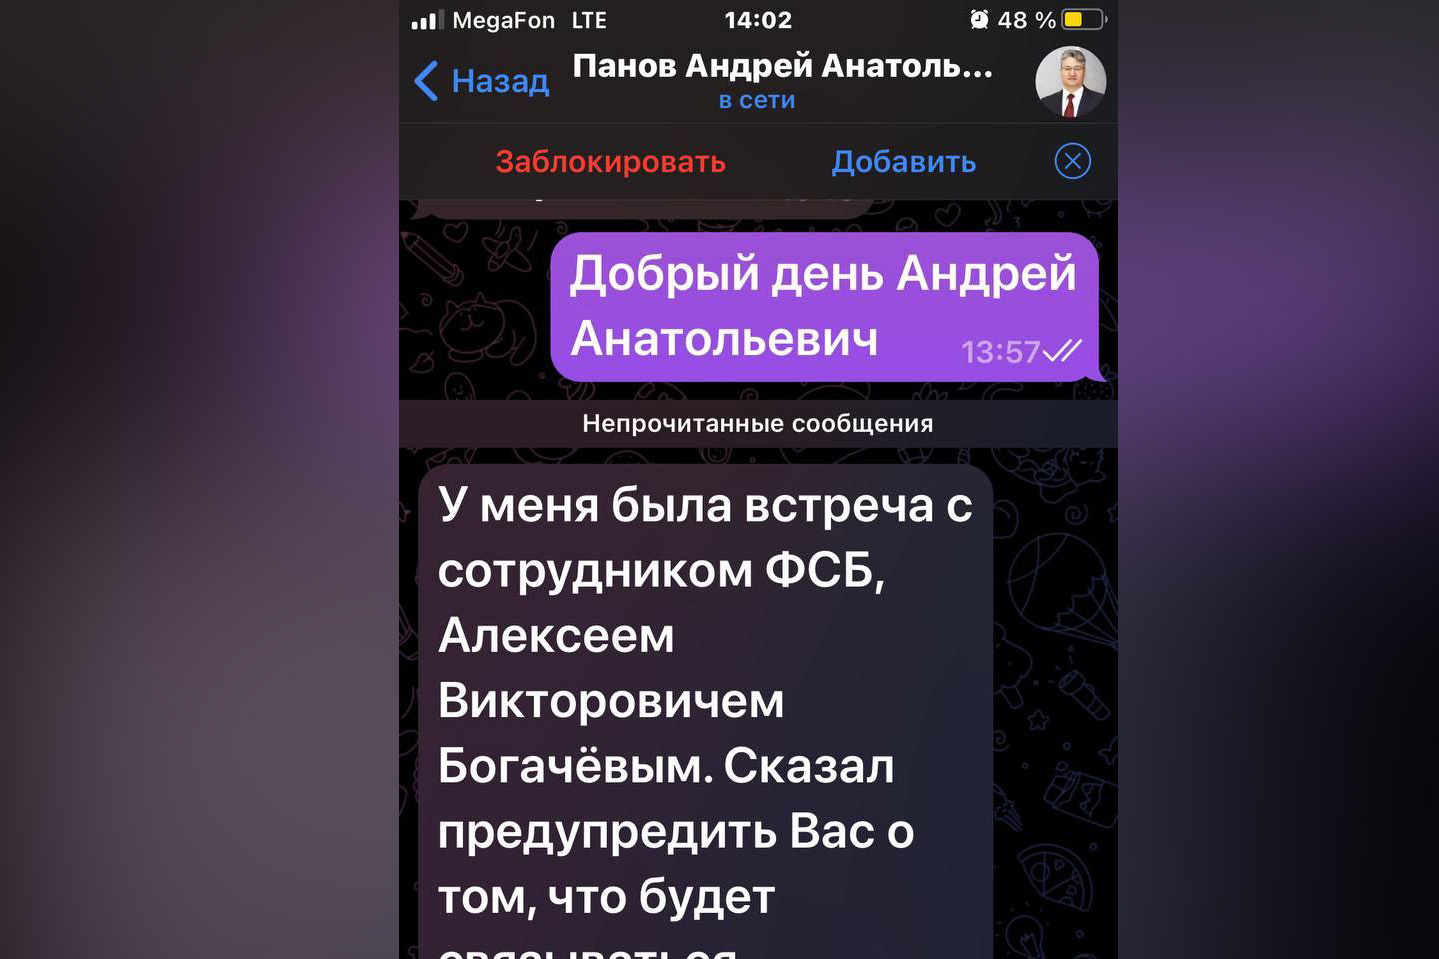 Мошенники создали фейковый аккаунт председателя правительства Кузбасса